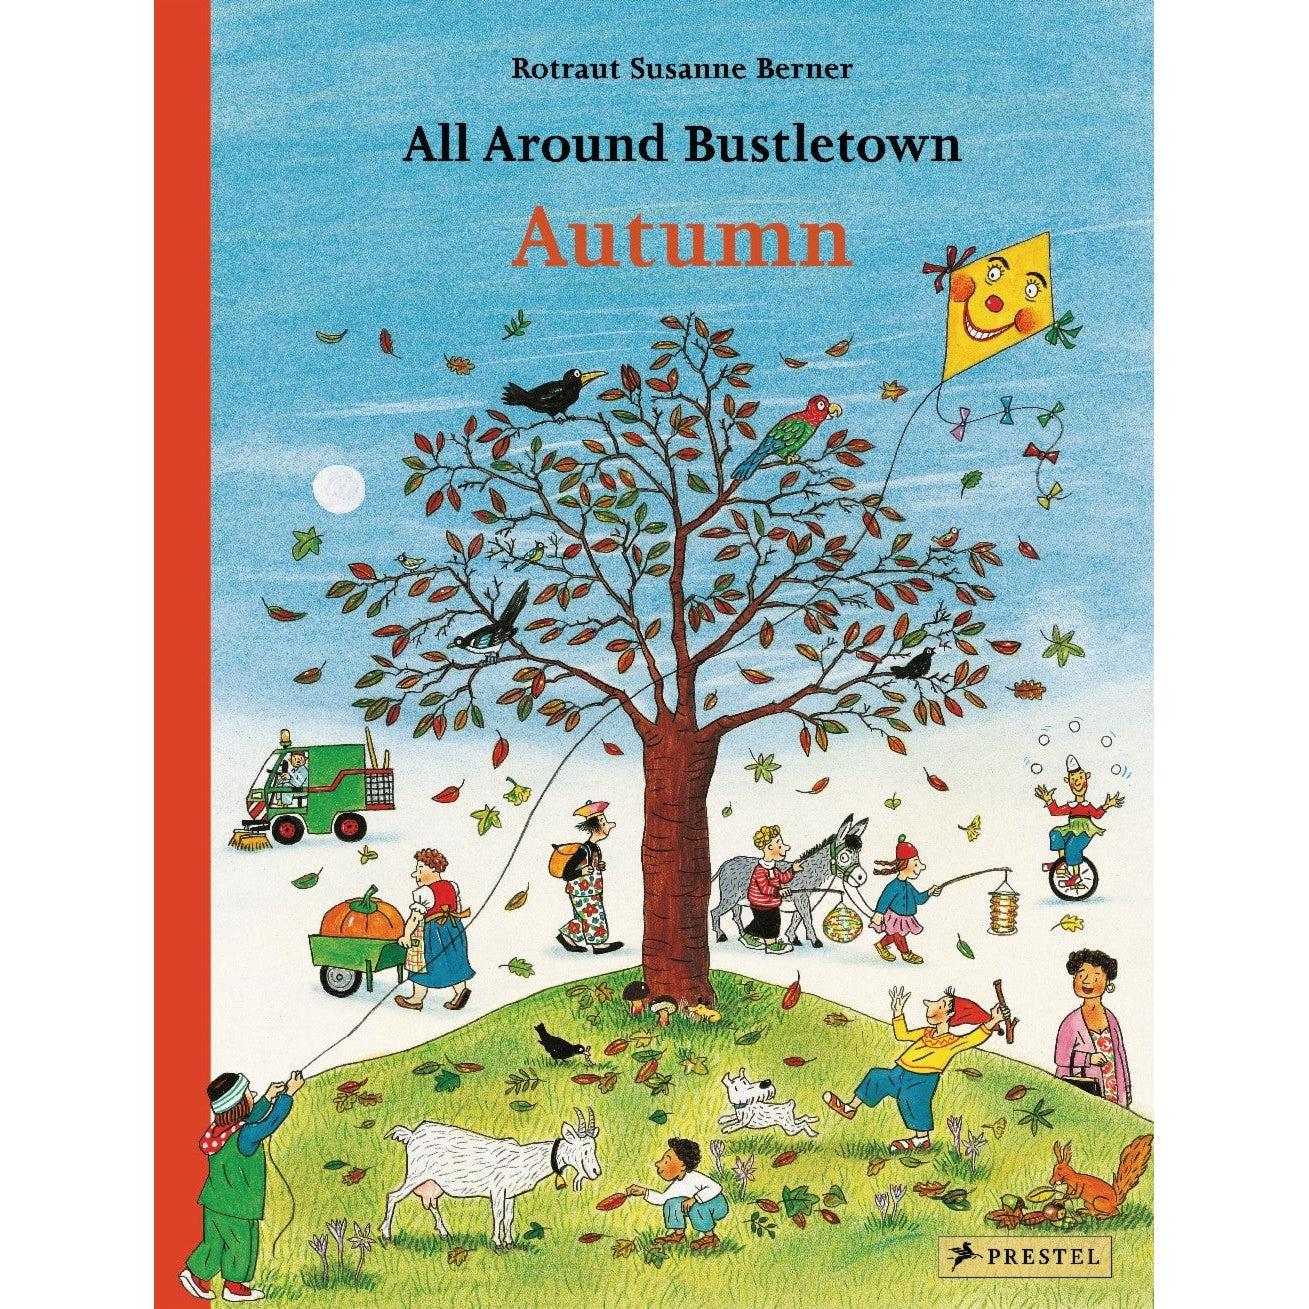 All Around Bustletown: Autumn